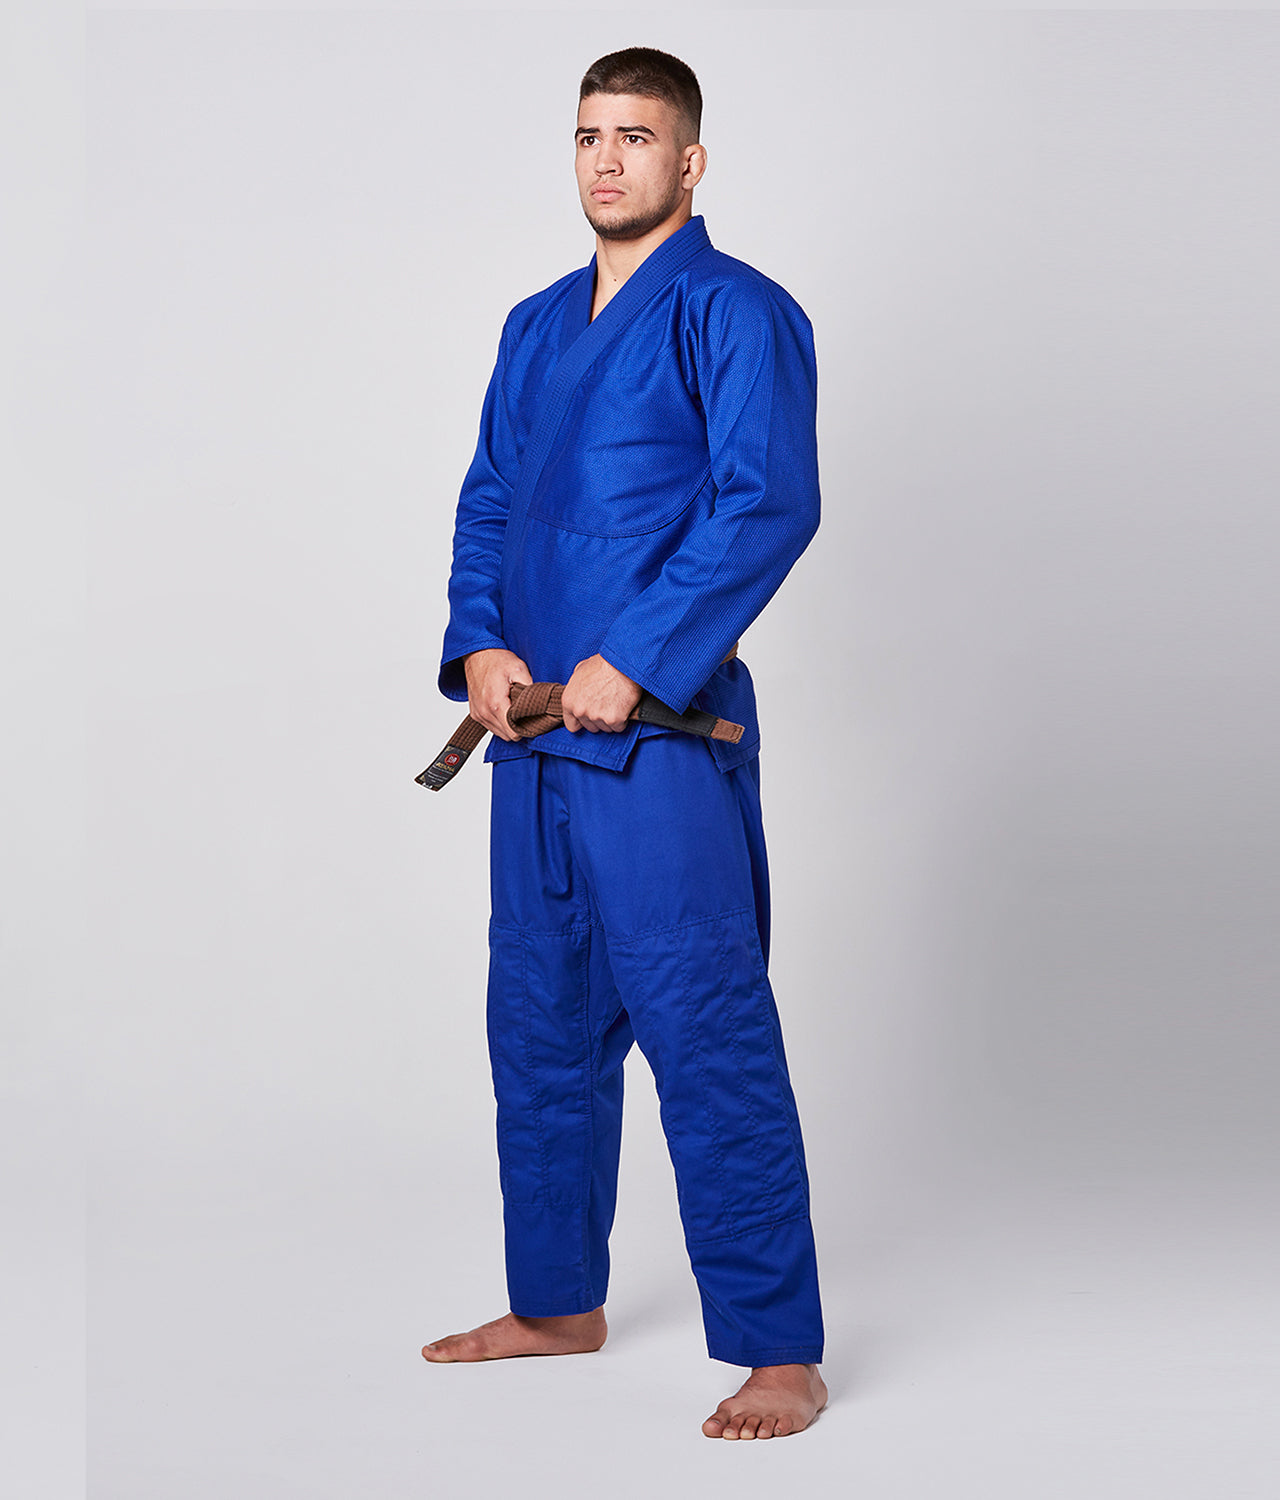 Elite Sports Men's Essential Blue Brazilian Jiu Jitsu BJJ Gi Side View